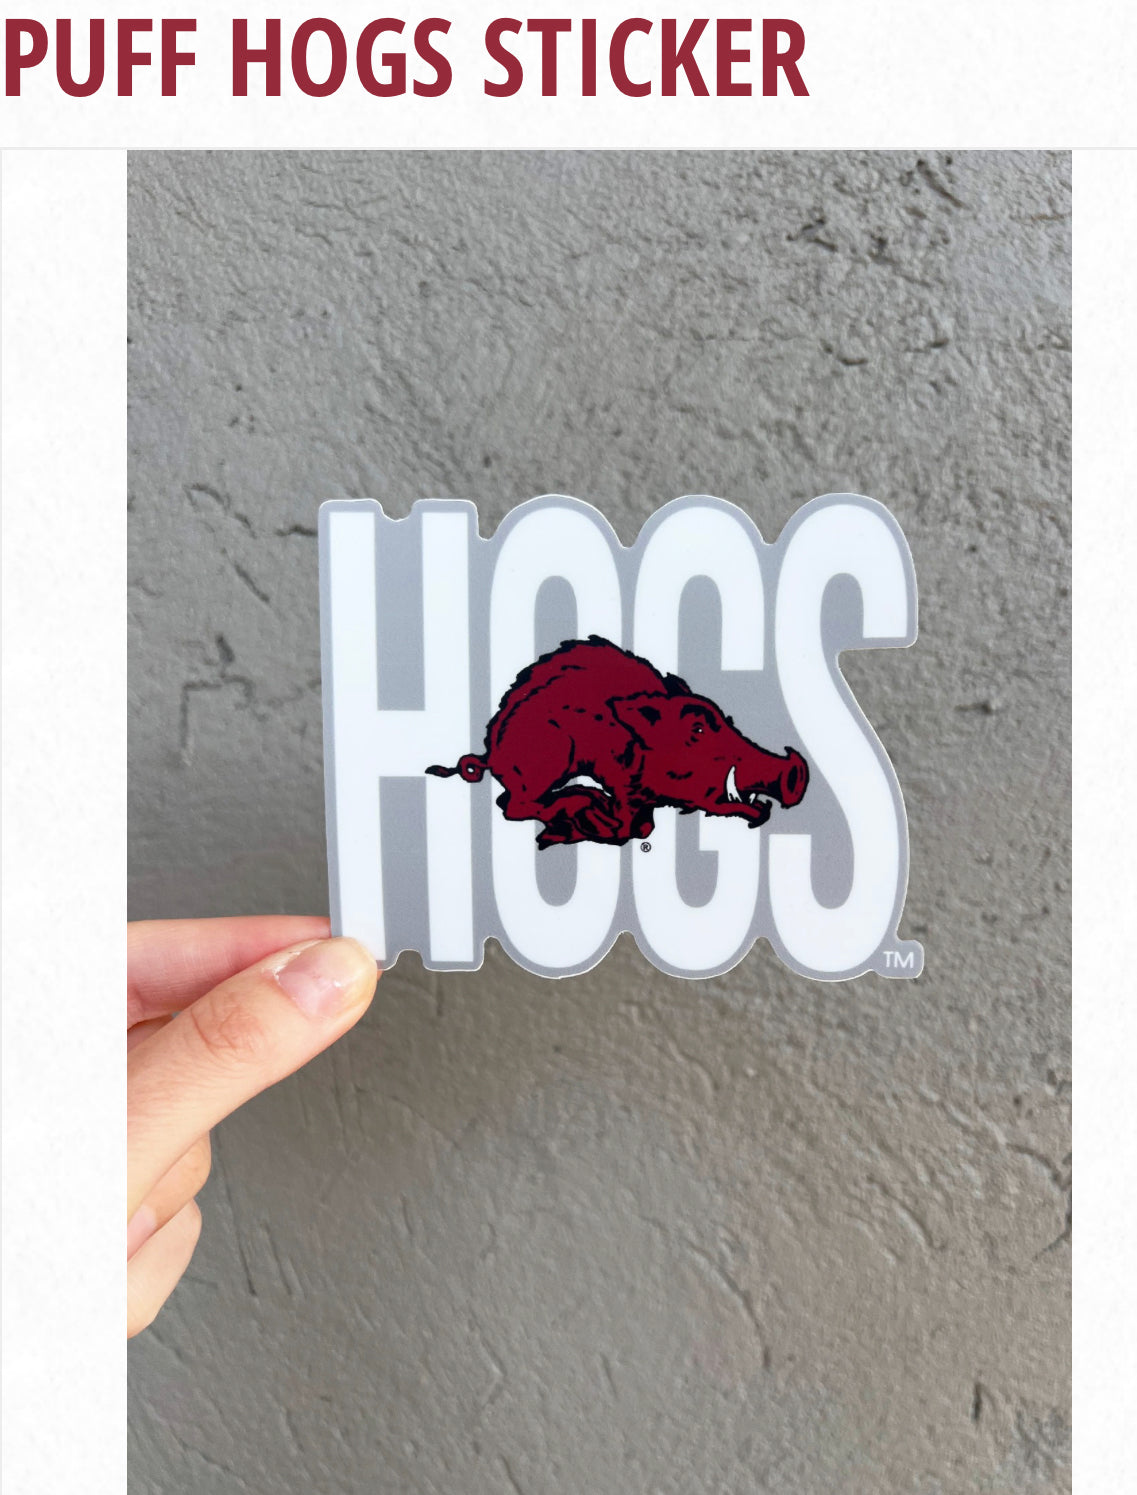 Puff Hog sticker